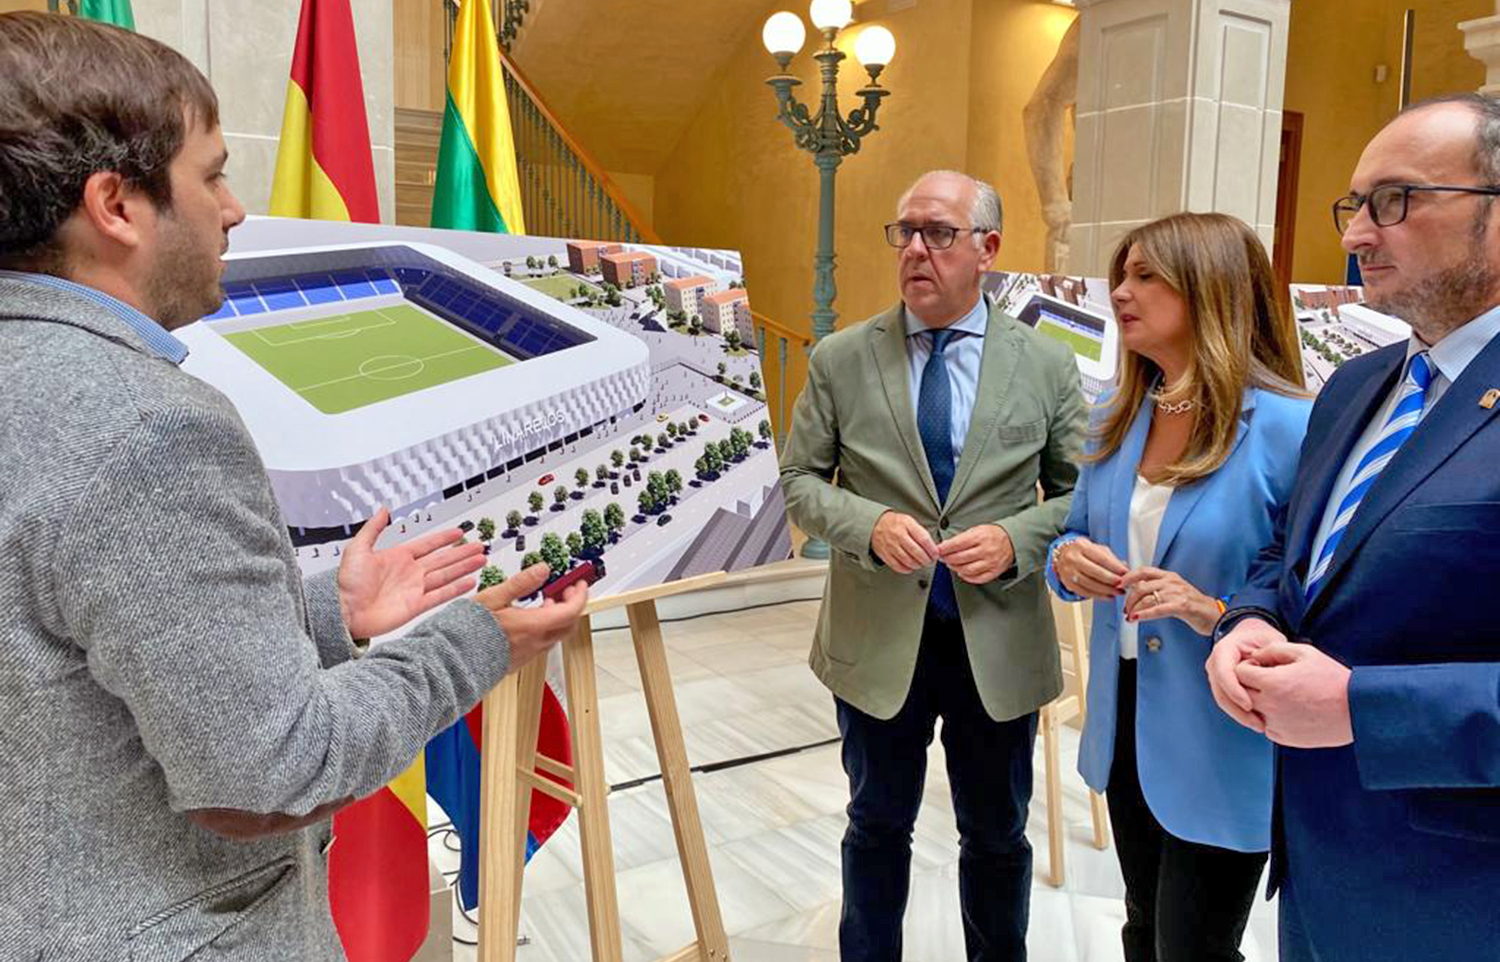 El delegado del Gobierno avala la remodelación del estadio de Linarejos como un proyecto transformador de Linares